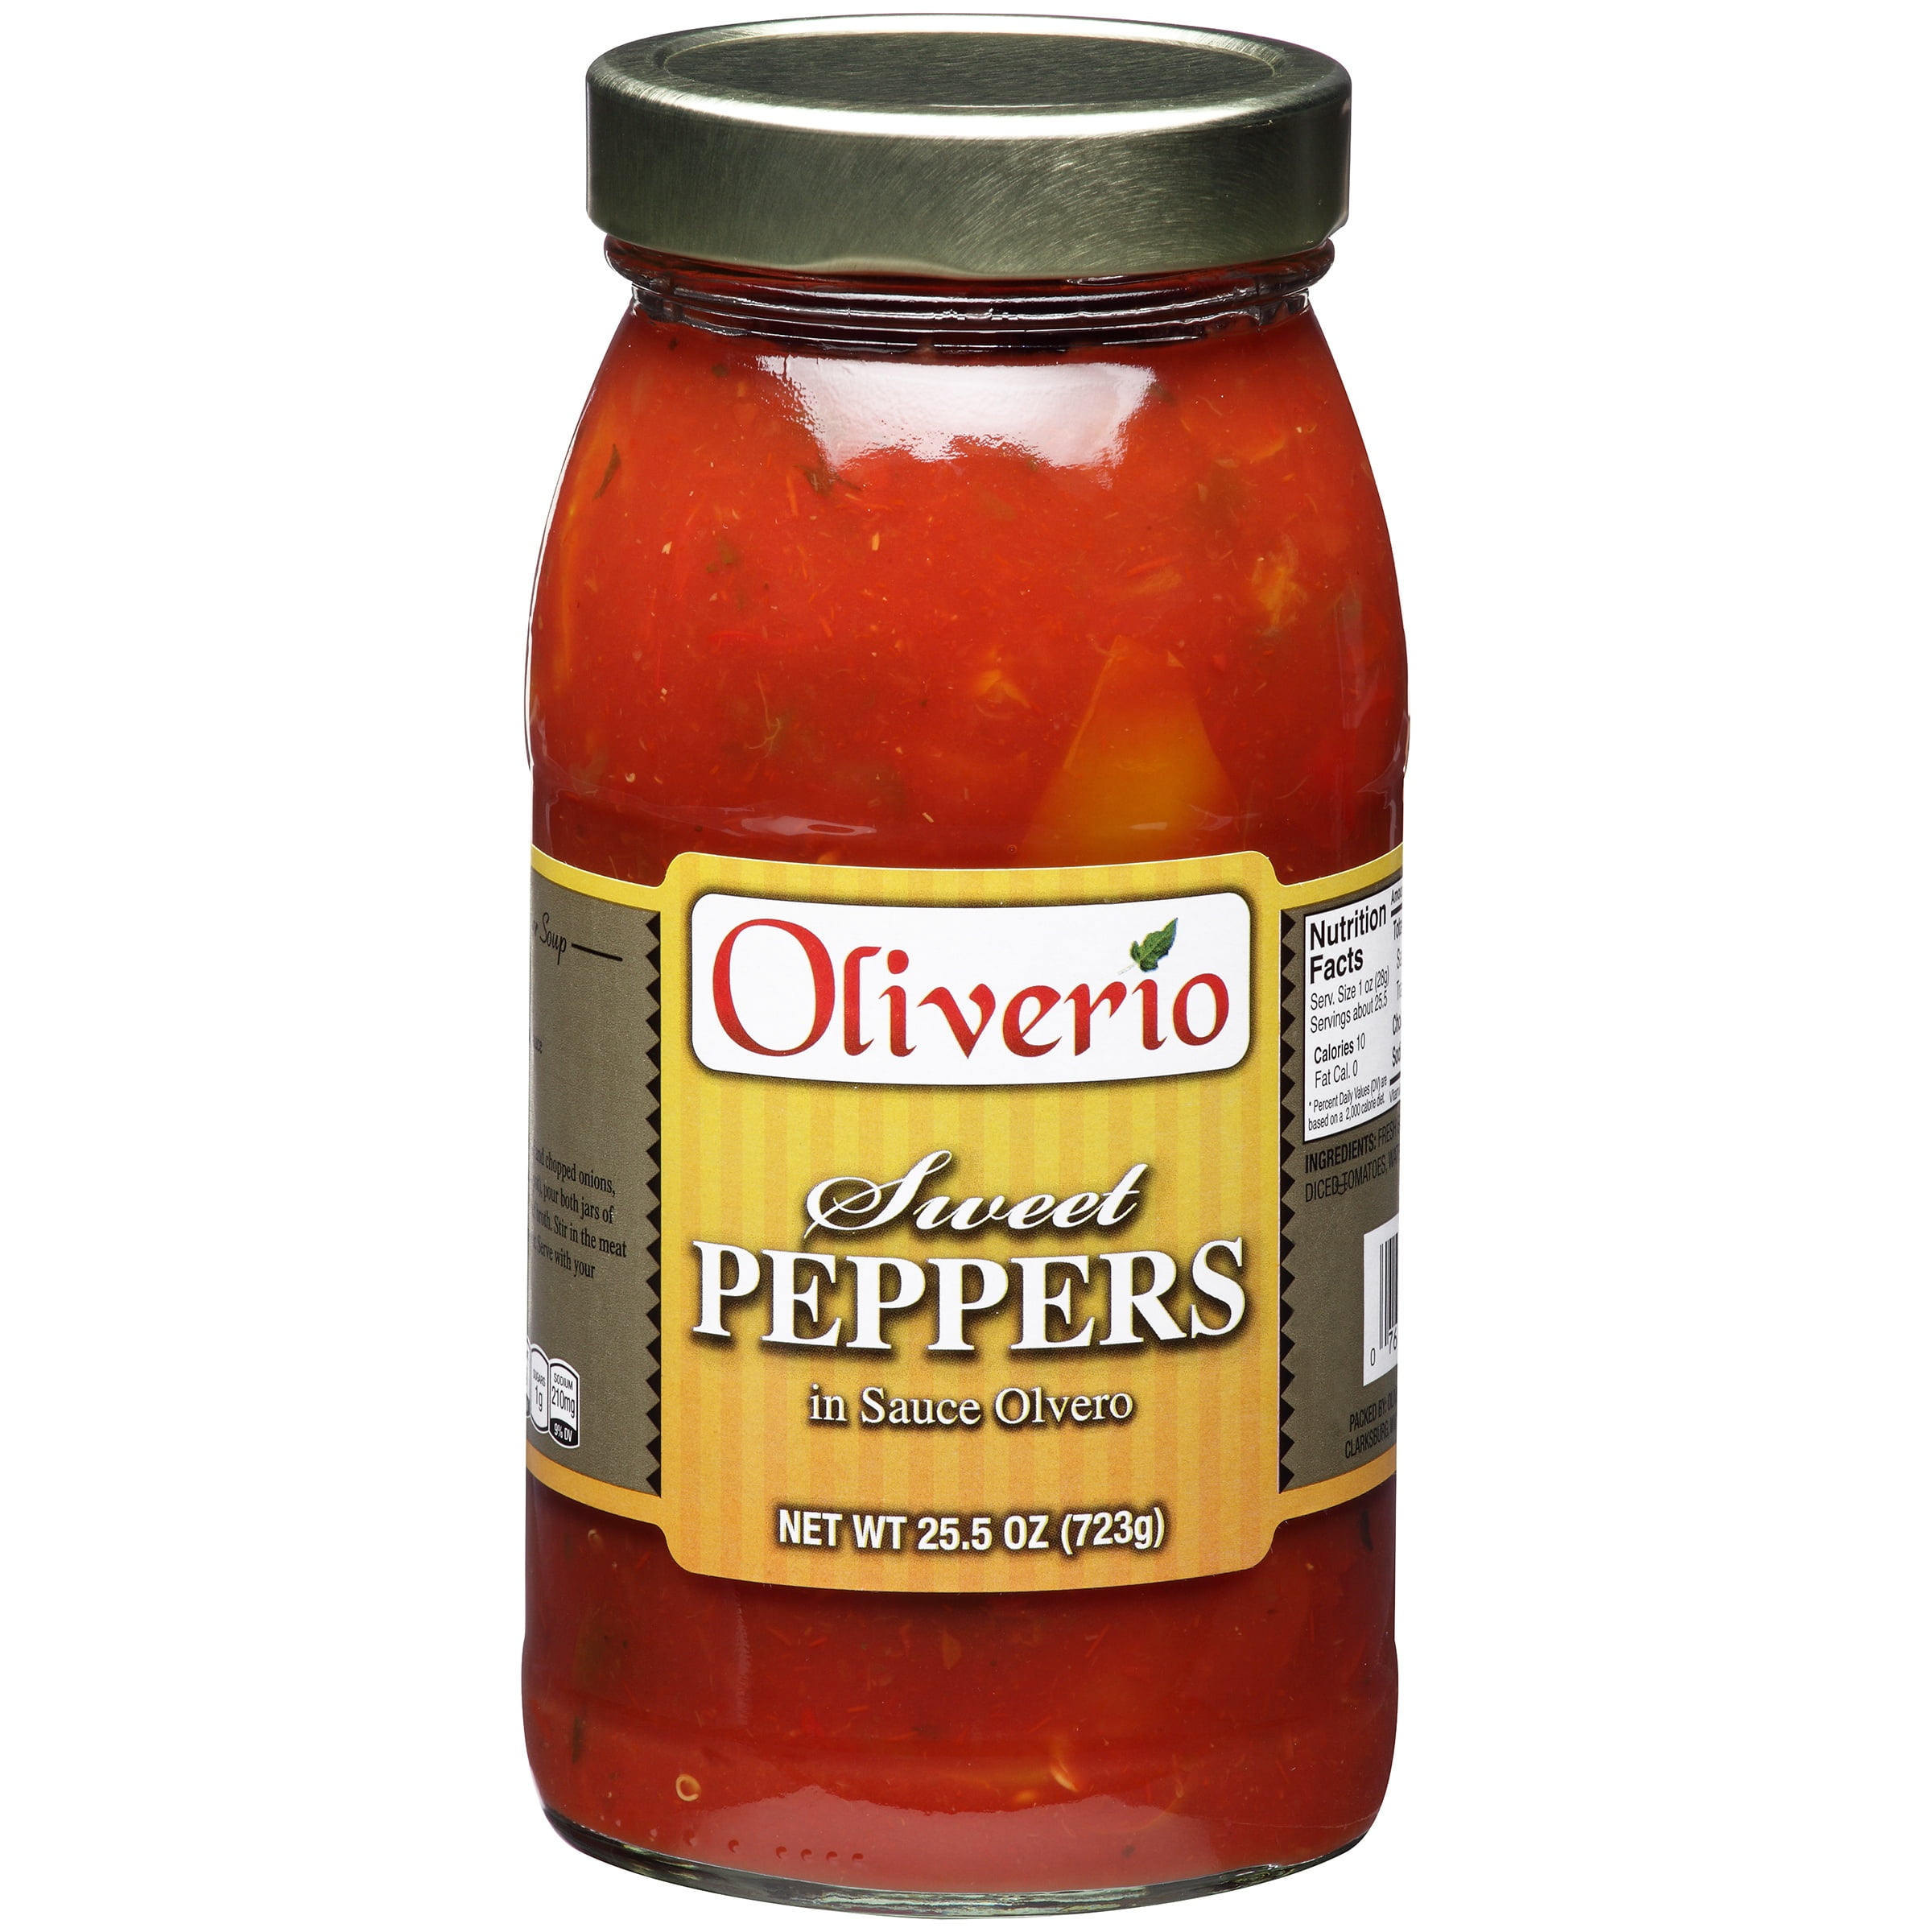 Pepper состав. Перец пикильо консервированный.